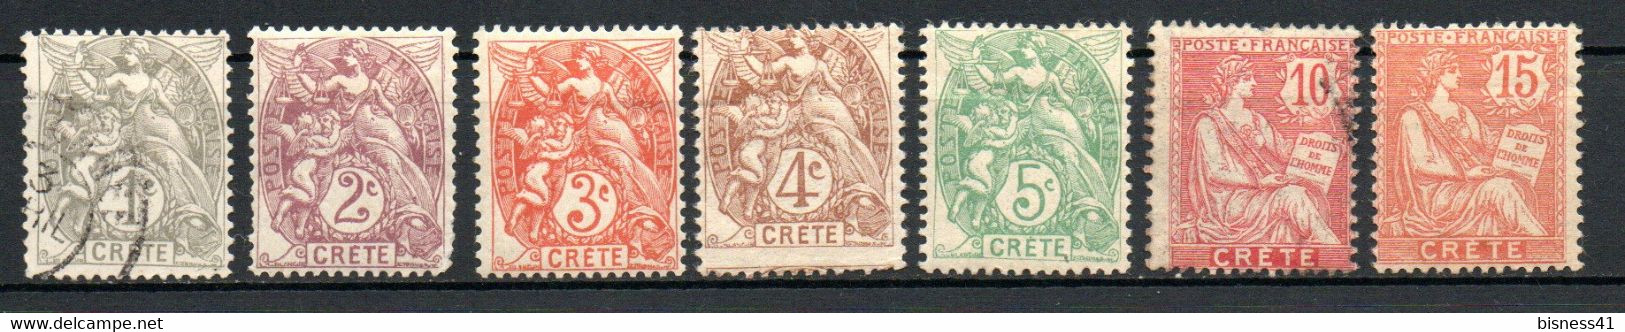 Col23 Crete N° 1 à 7 Neuf X MH Et Oblitéré Cote 20,00 Euro - Unused Stamps